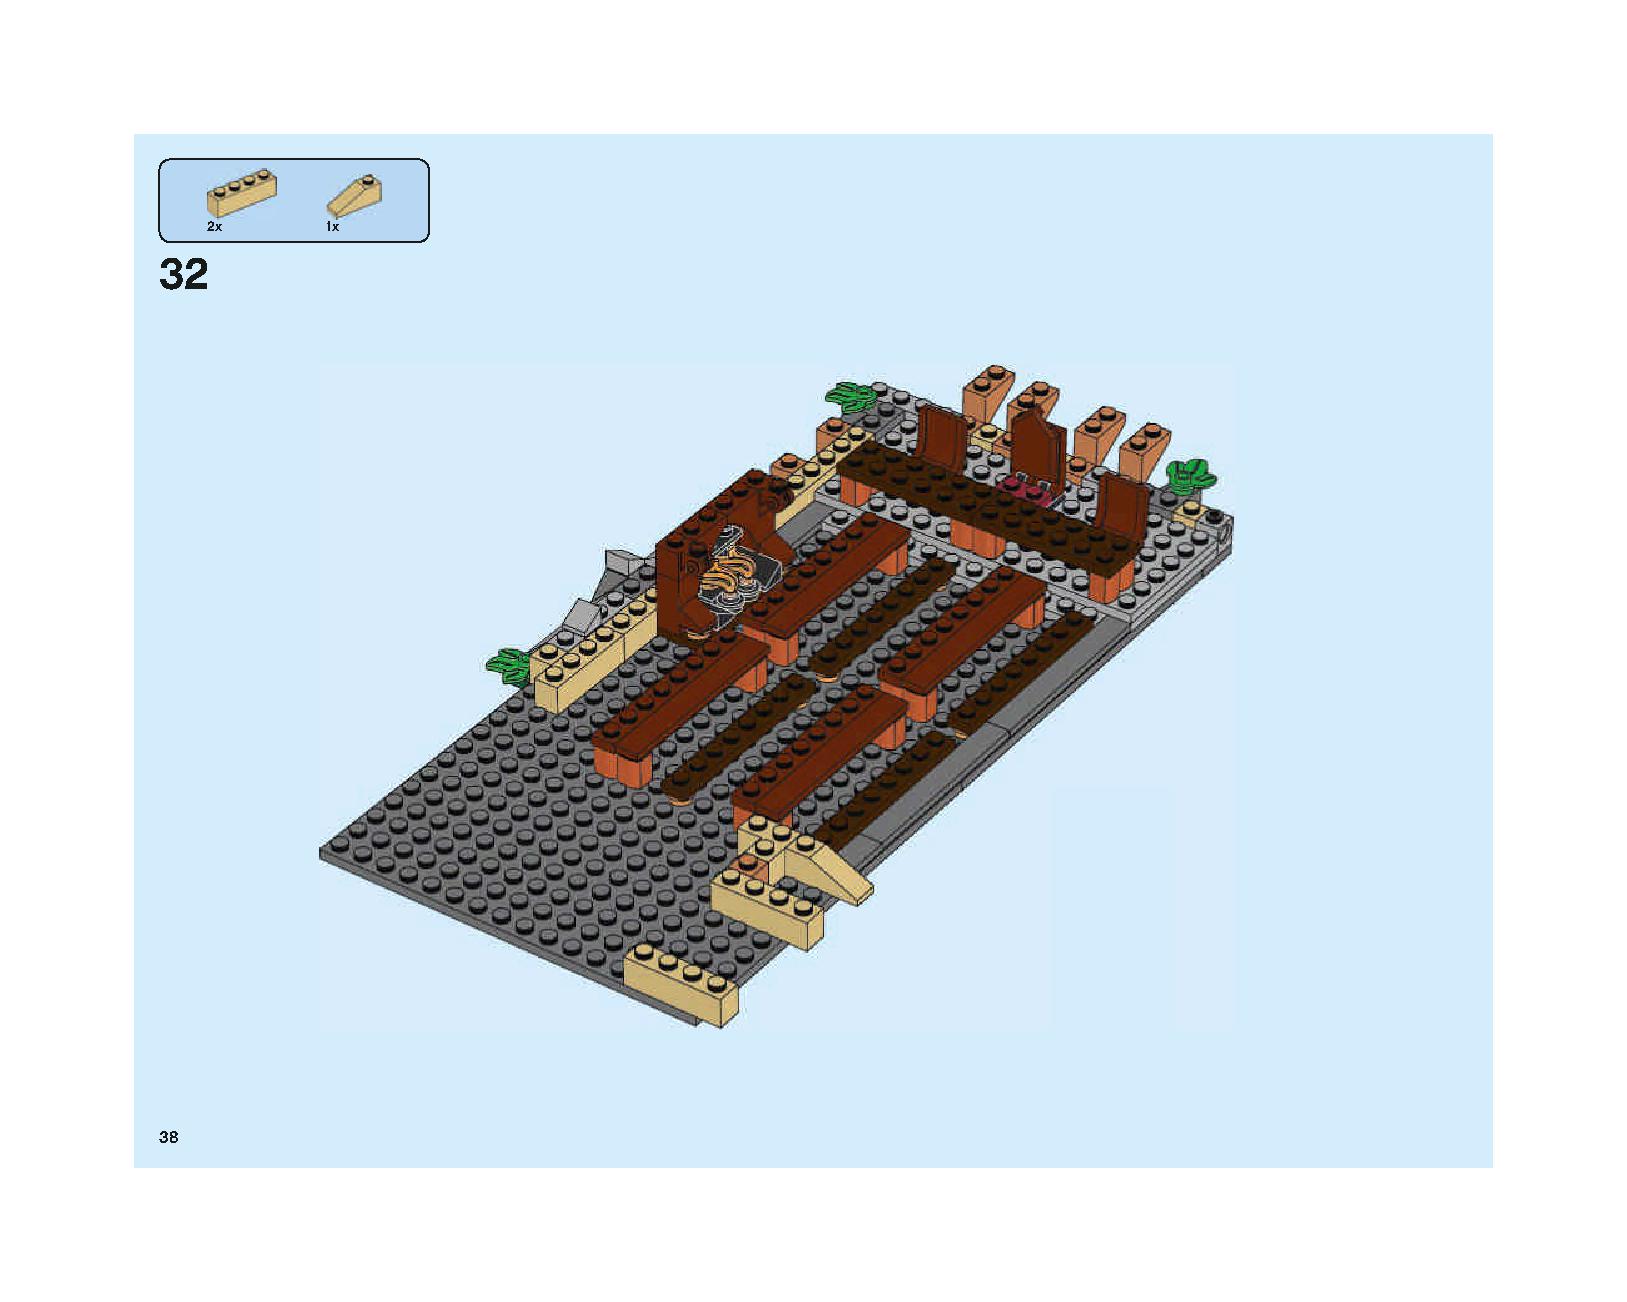 ホグワーツの大広間 75954 レゴの商品情報 レゴの説明書・組立方法 38 page